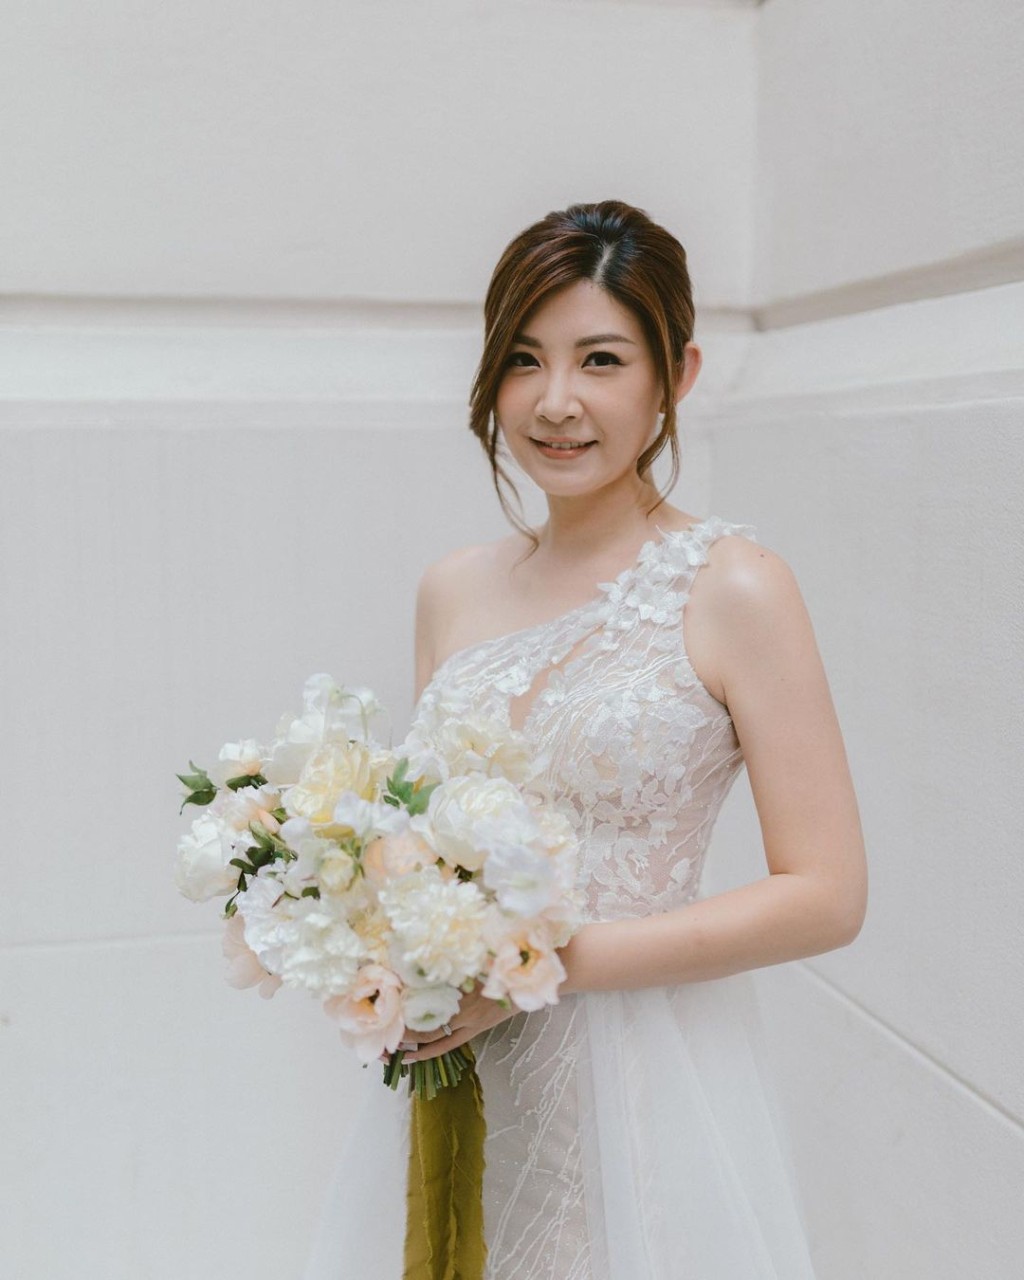 張文采於2018年與消防員盧樂輝結婚。